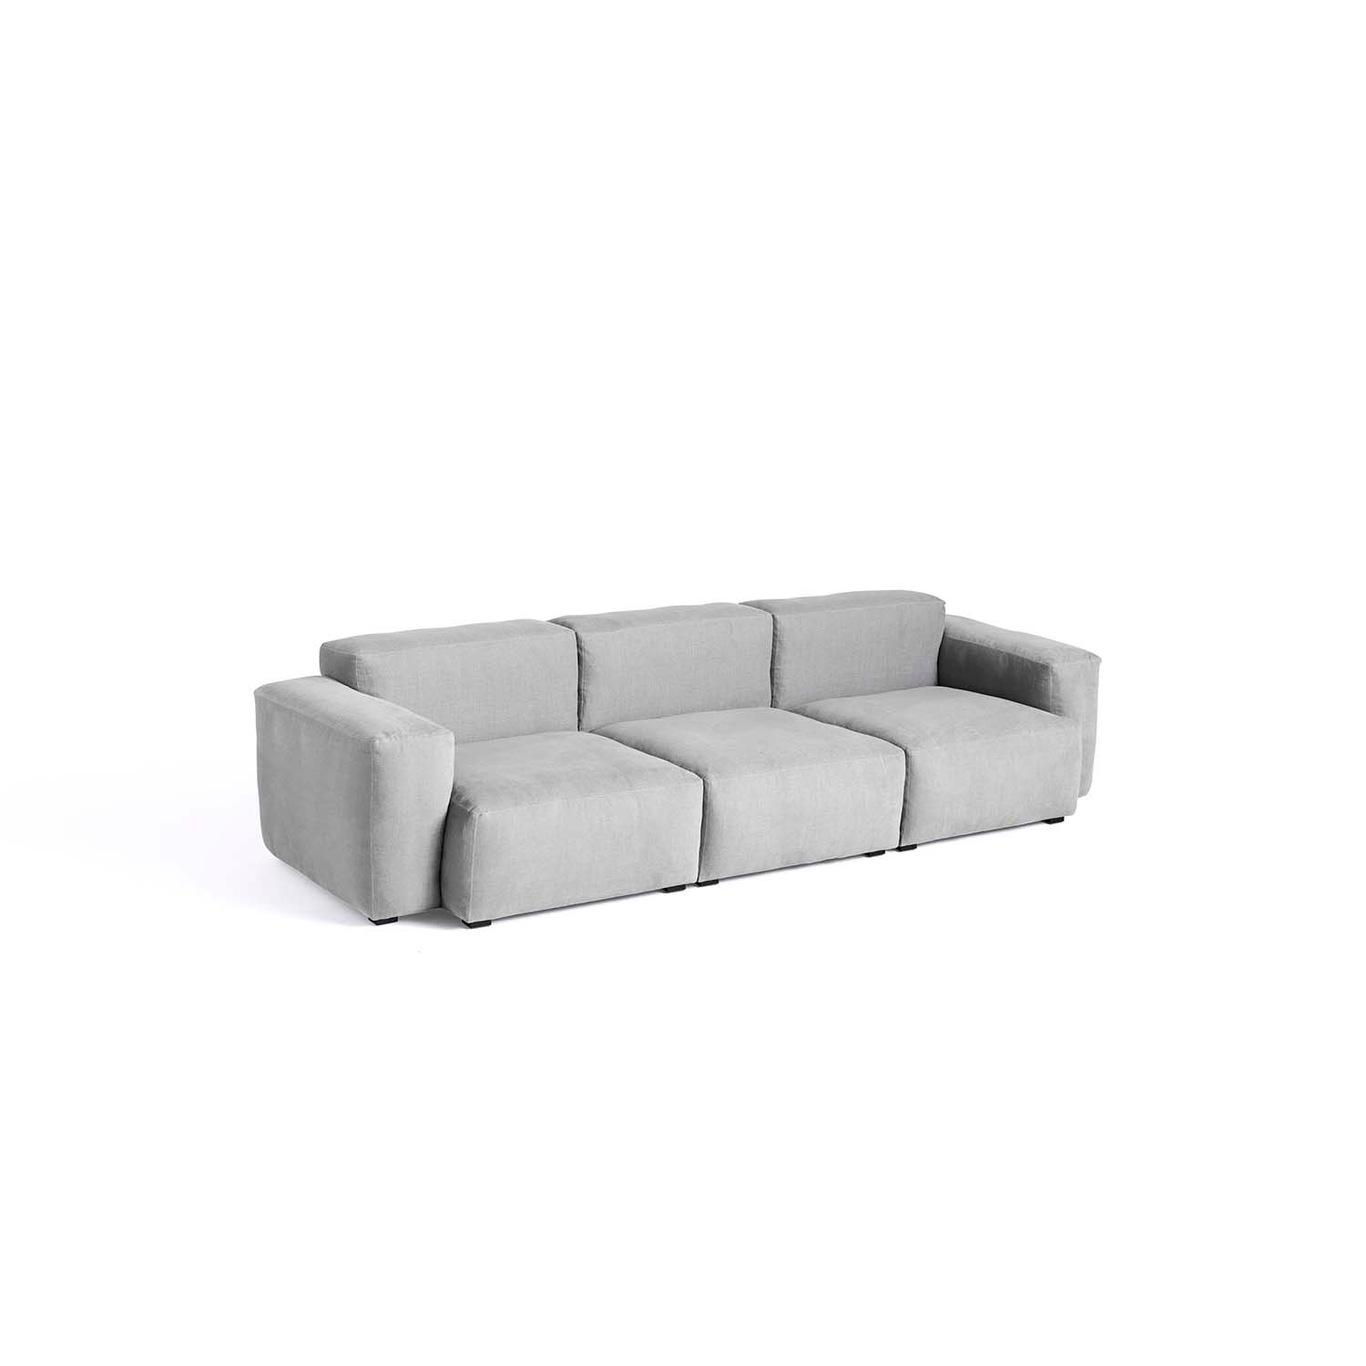 Mags Soft Low 3-personers Sofa Comb. 1, Linara 443